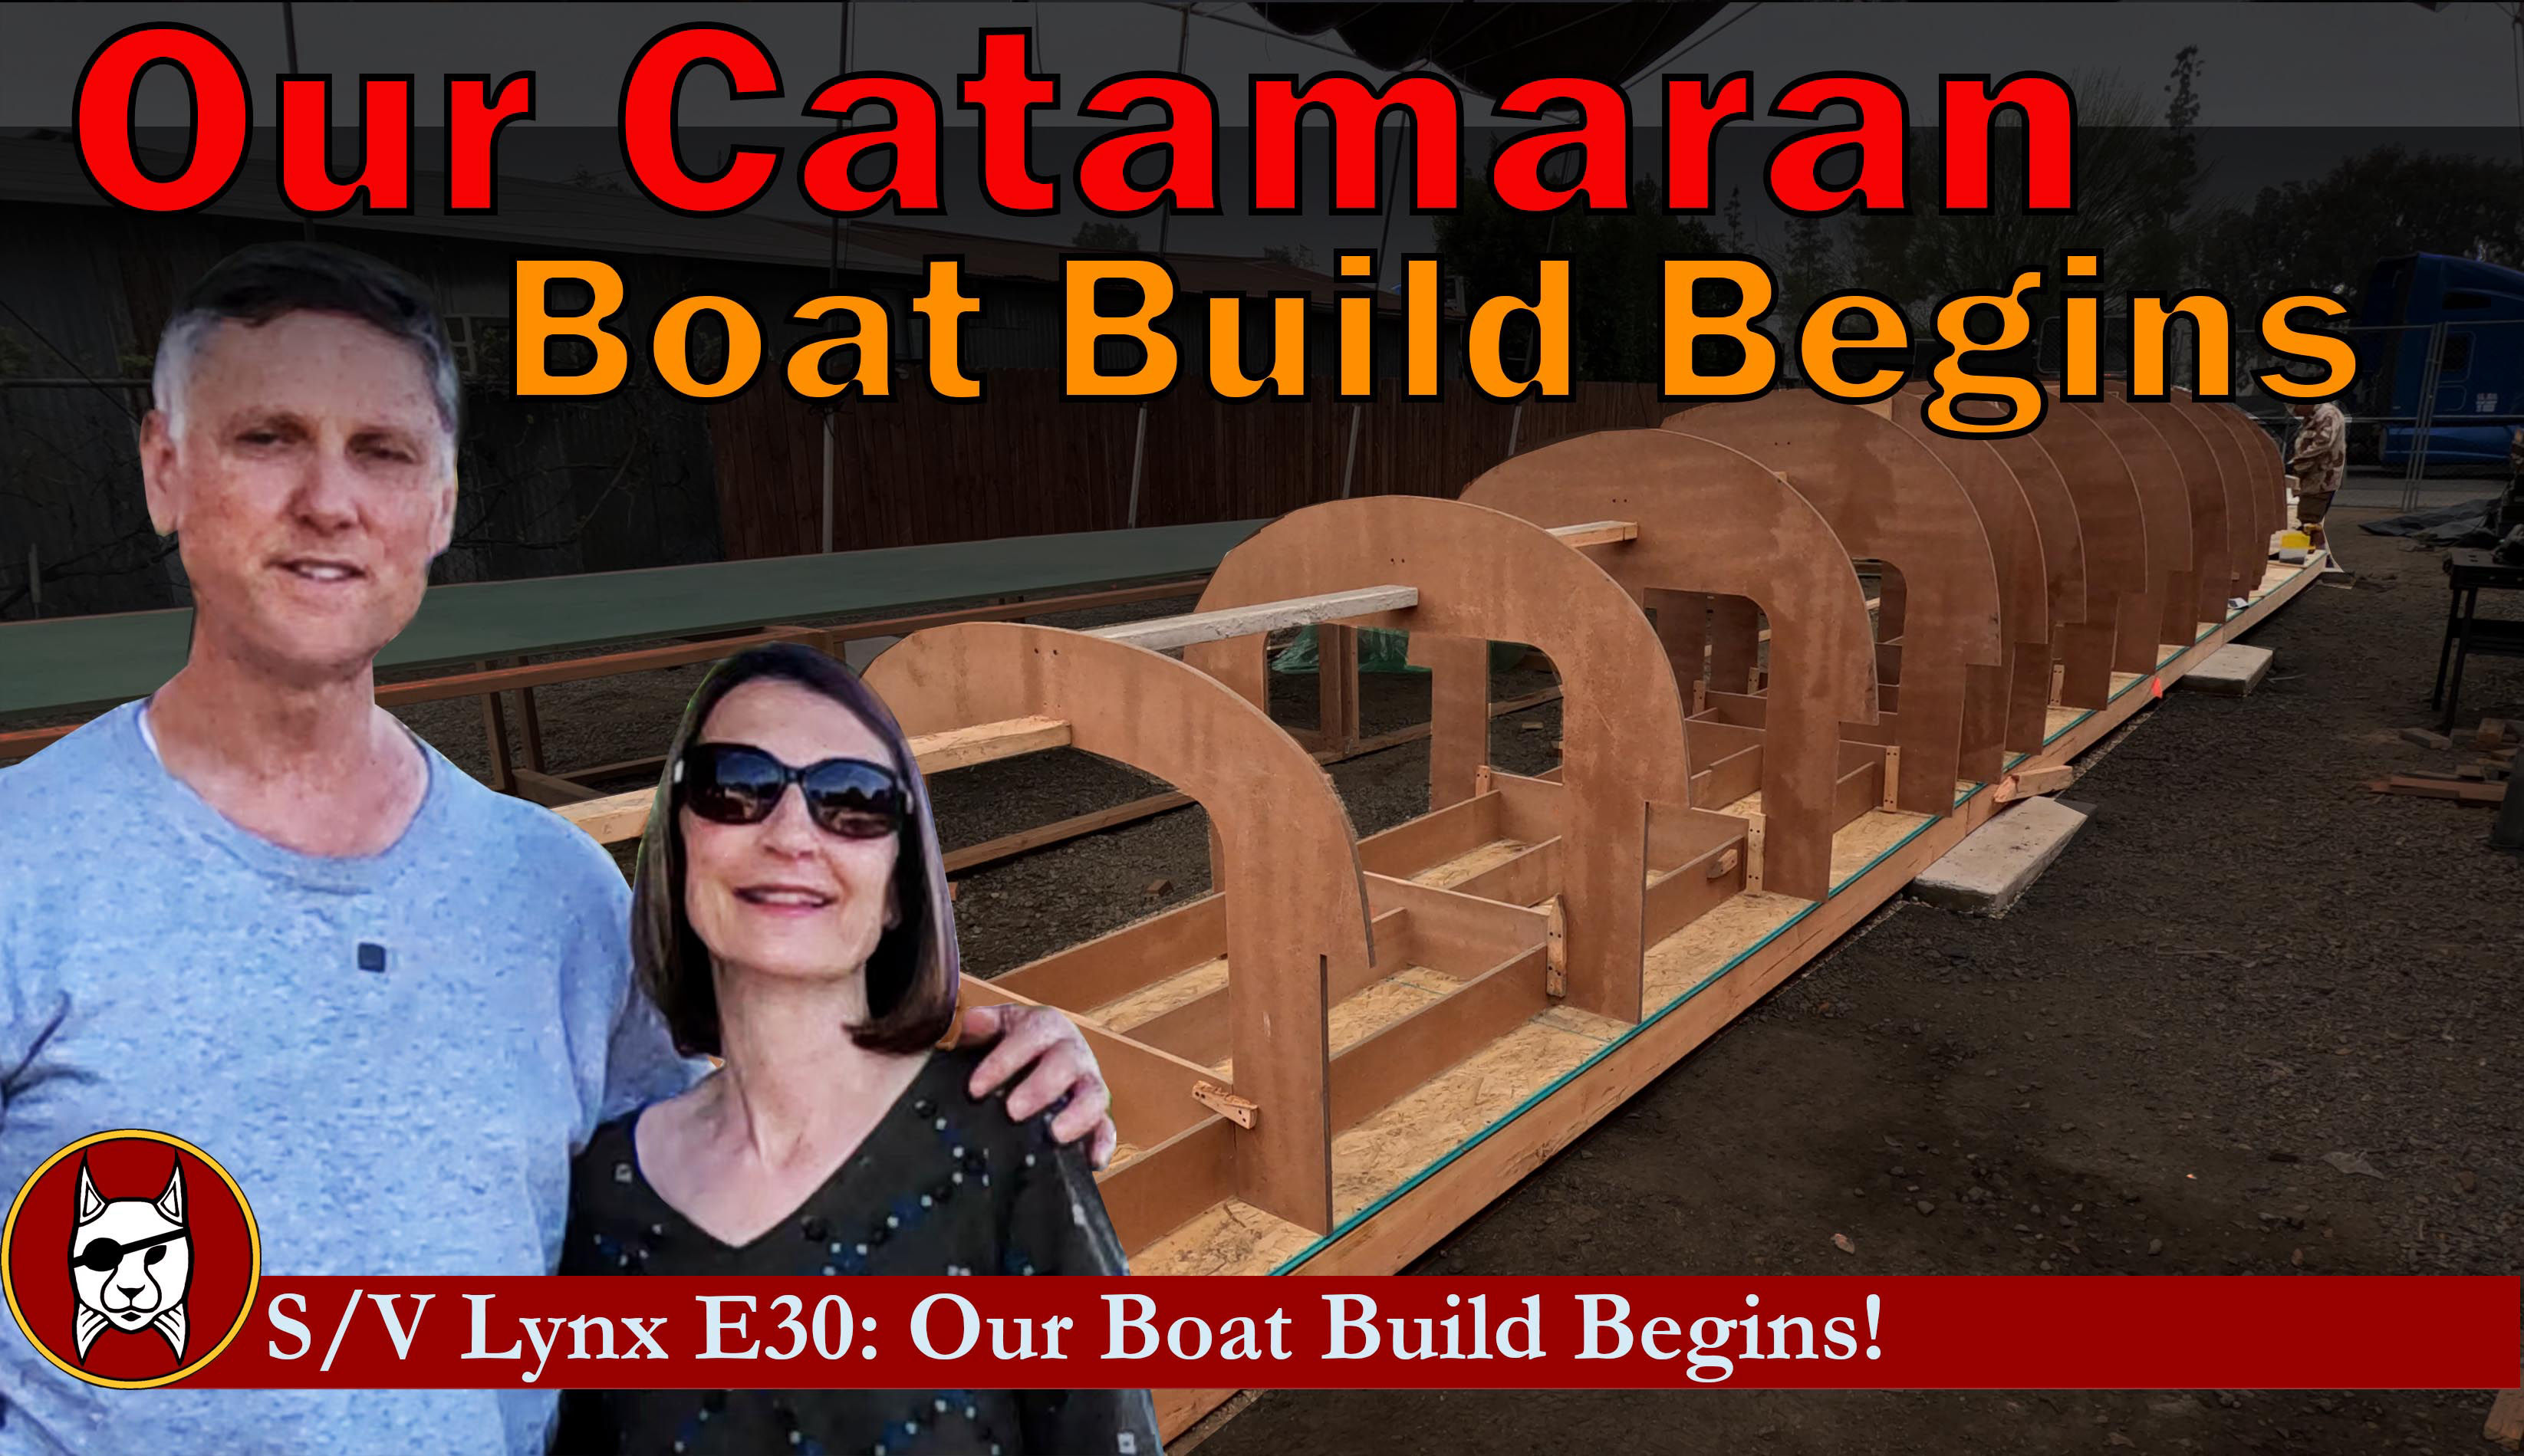 Catamaran Boat Build Begins!